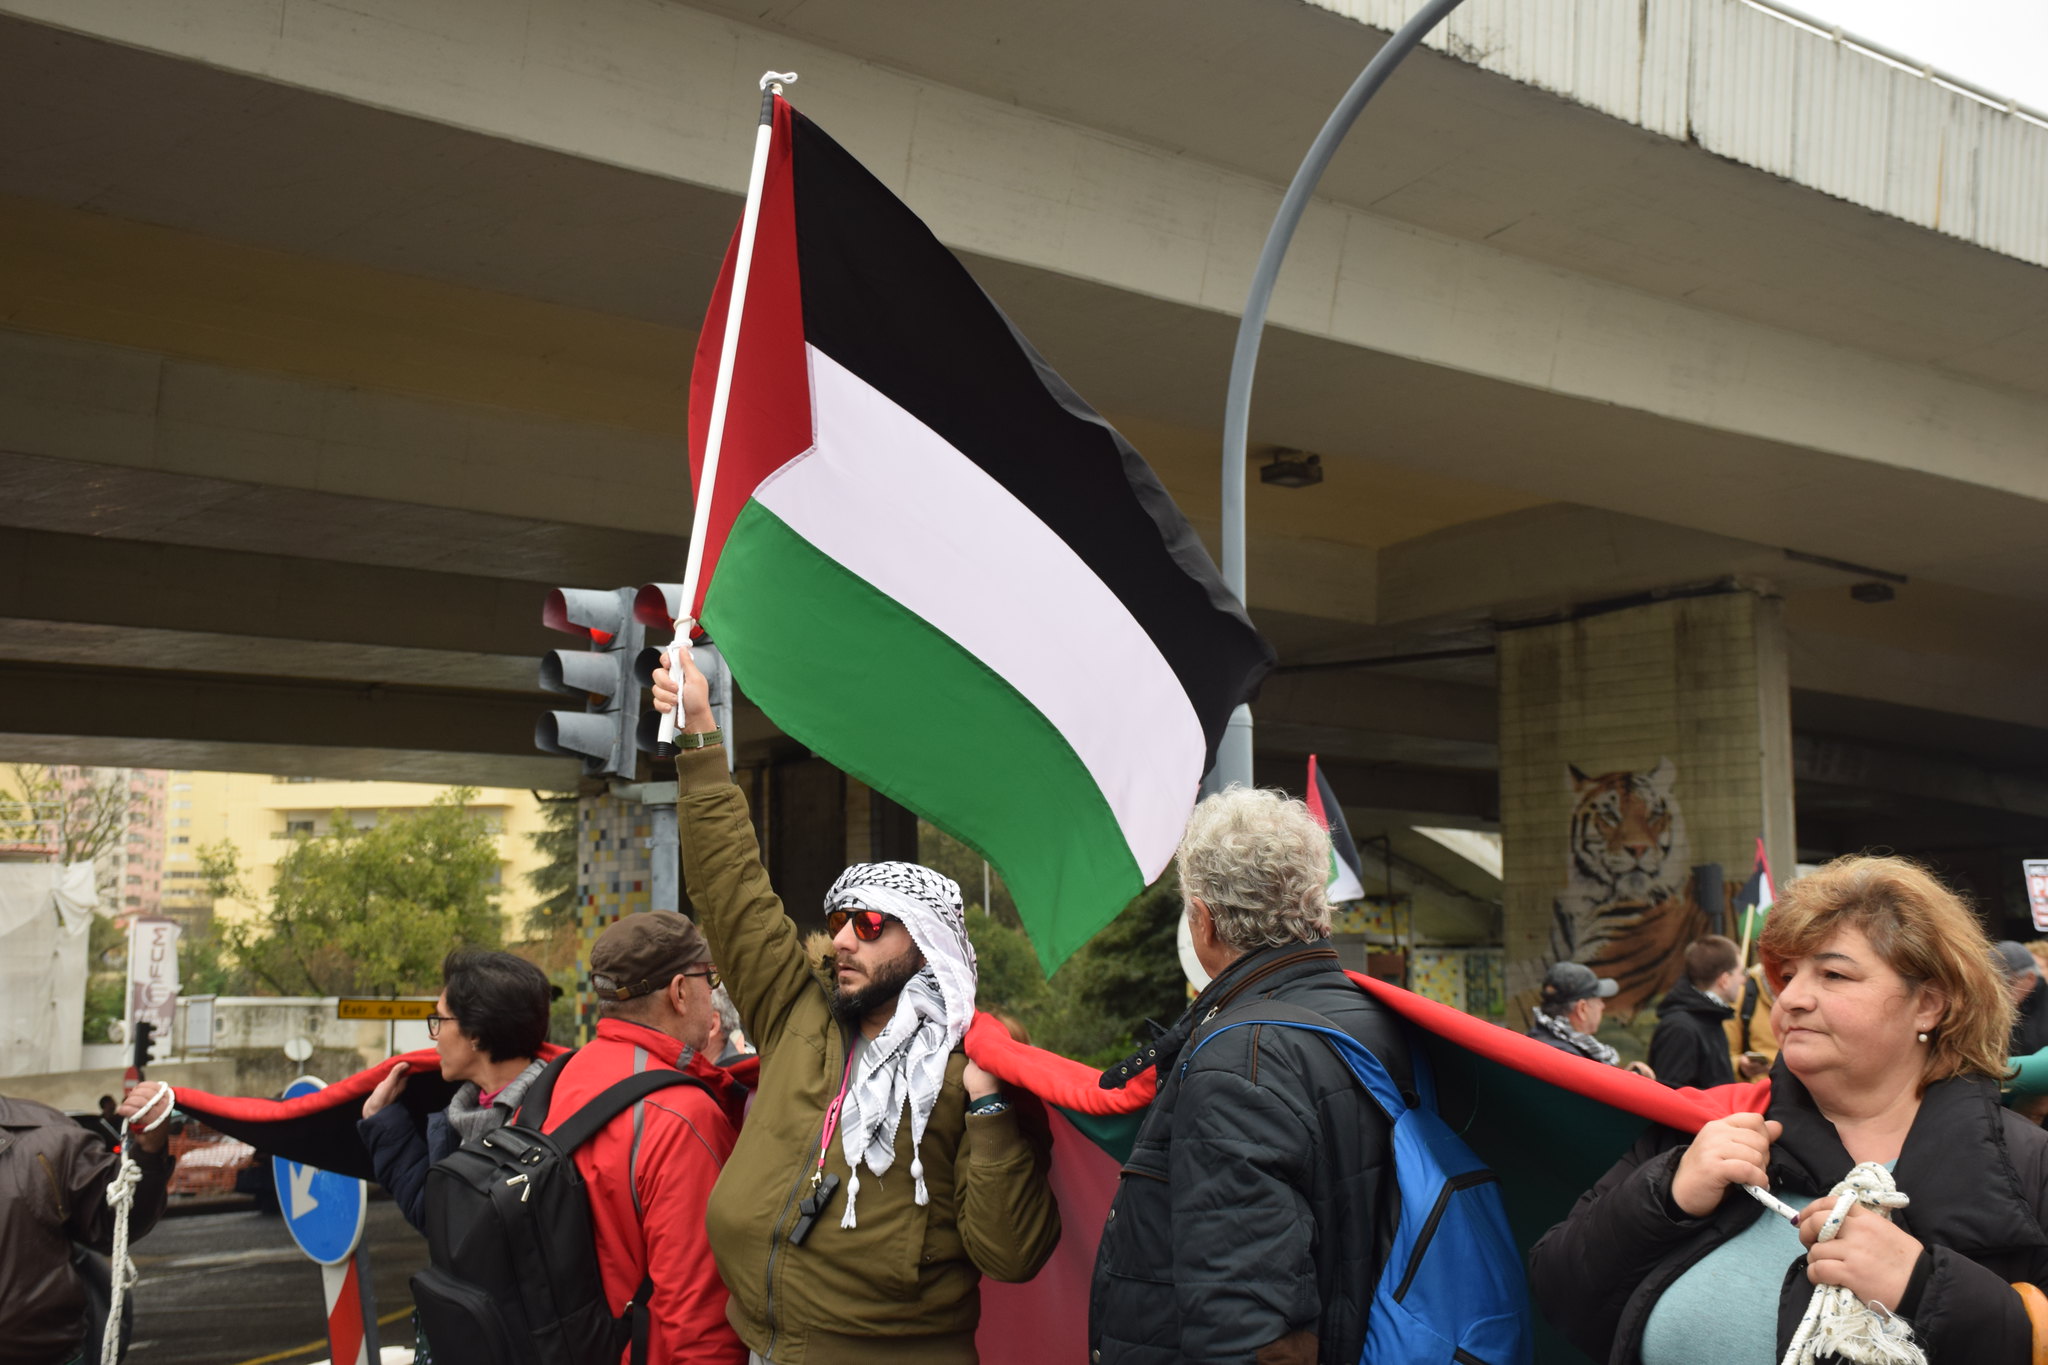 Na zdjęciu widać flagę Palestyny i tłum uczestniczący w demonstracji